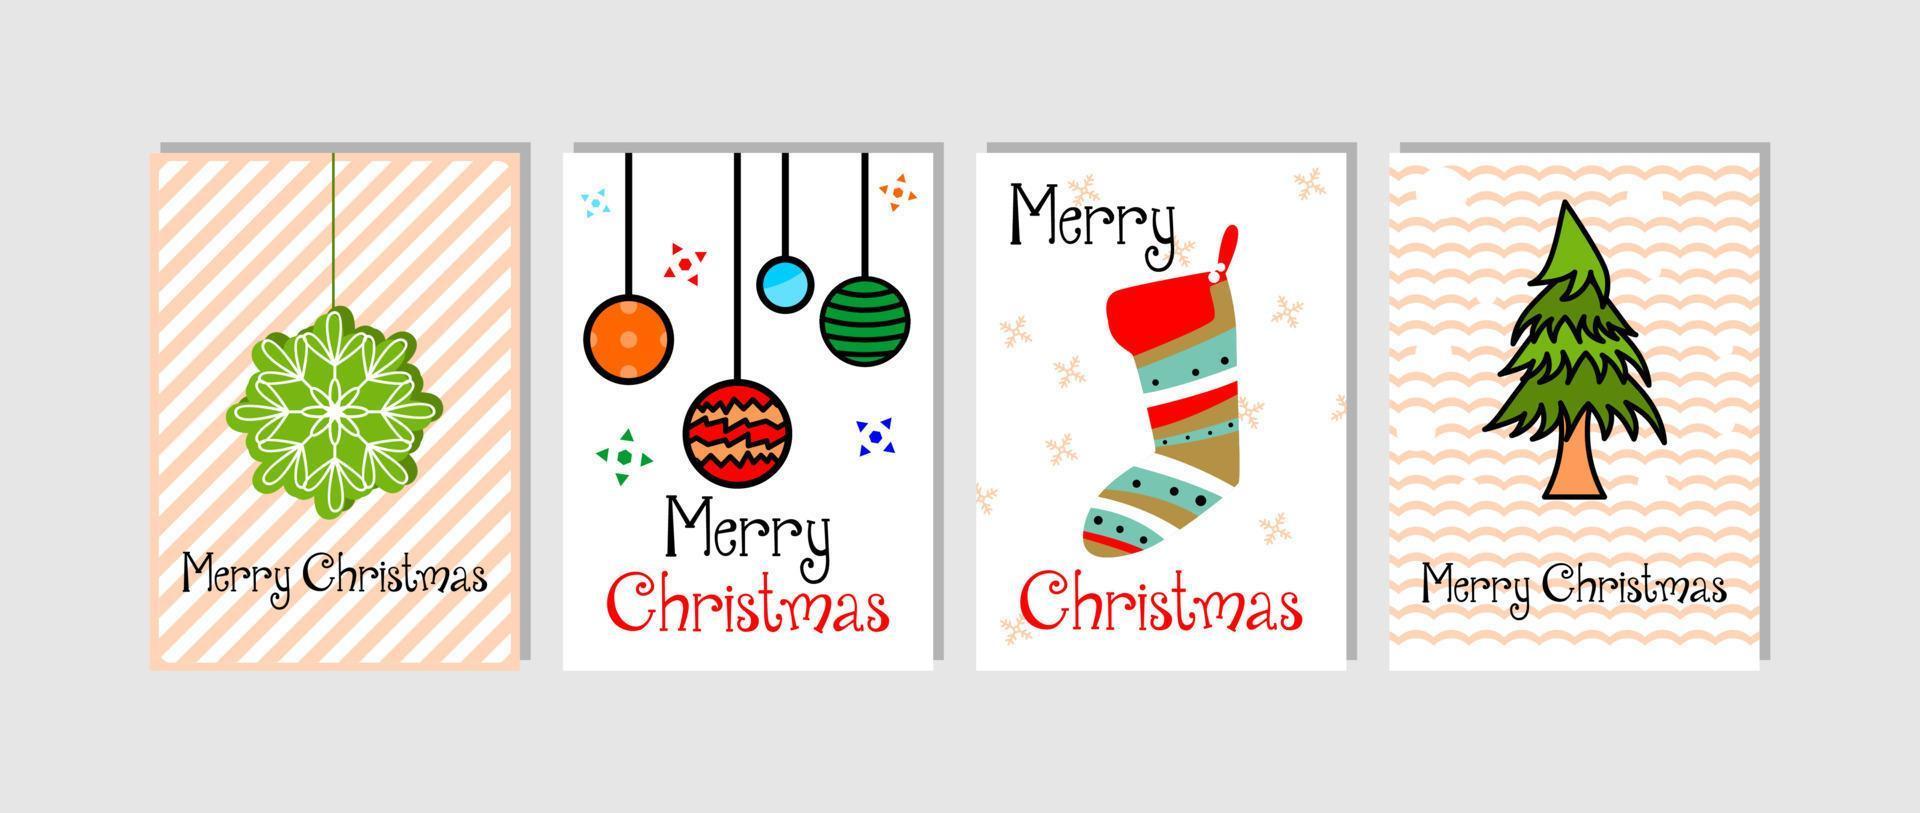 Feliz Natal. férias de inverno ilustração vetorial imagens para cartões postais, cartazes, cartões e planos de fundo. vetor